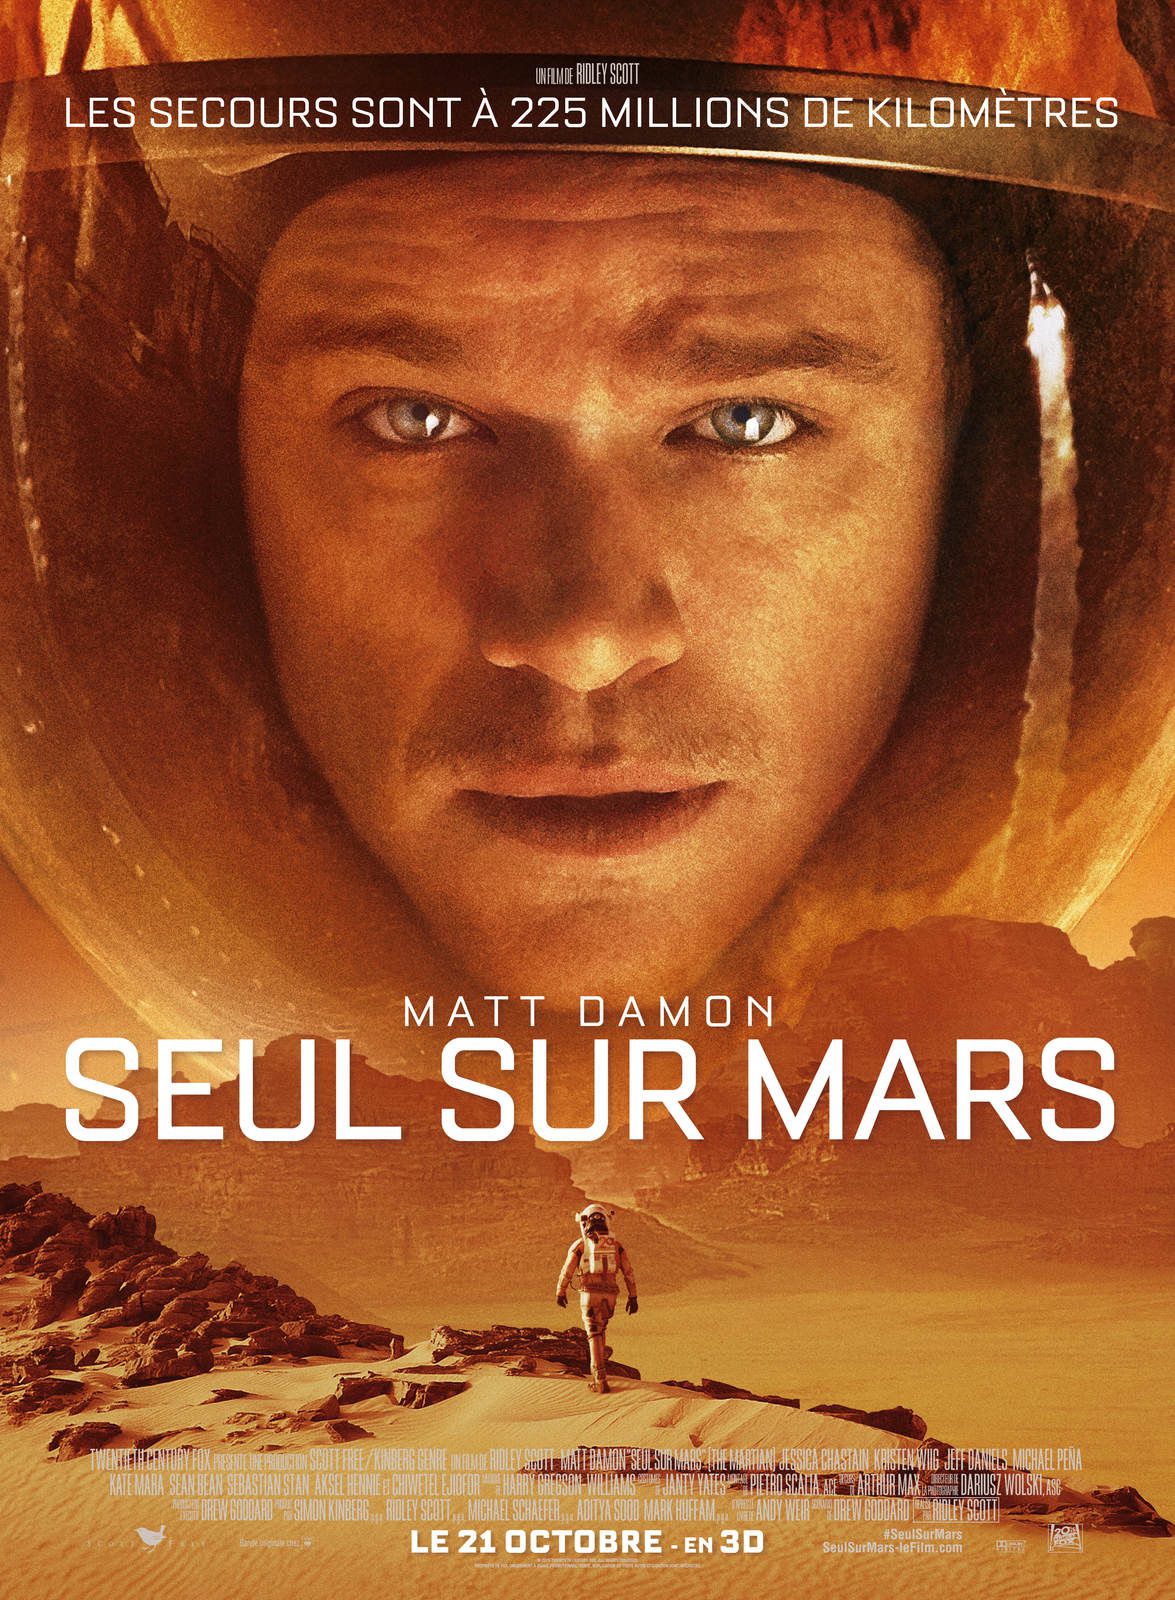 Seul sur Mars : Ridley Scott embarque Matt Damon sur la planète rouge